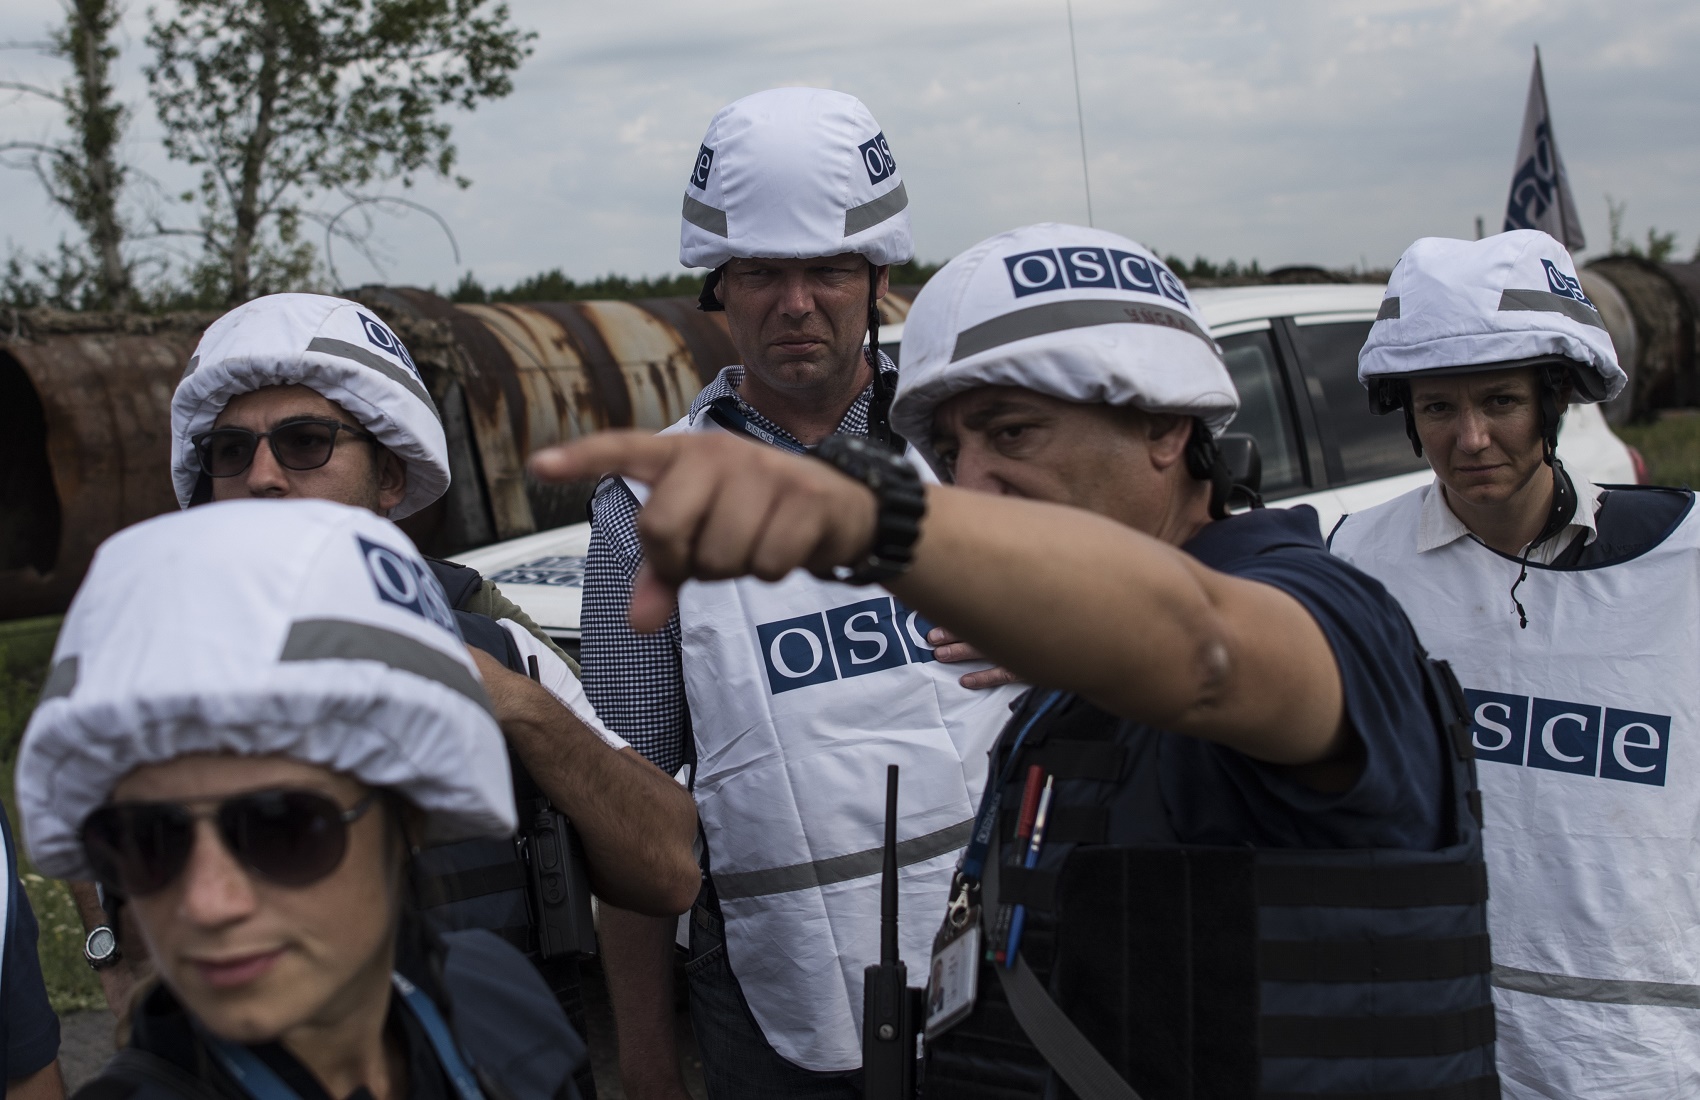 ОБСЕ: на участках разведения замечены вооруженные формирования с повязками «СЦКК»